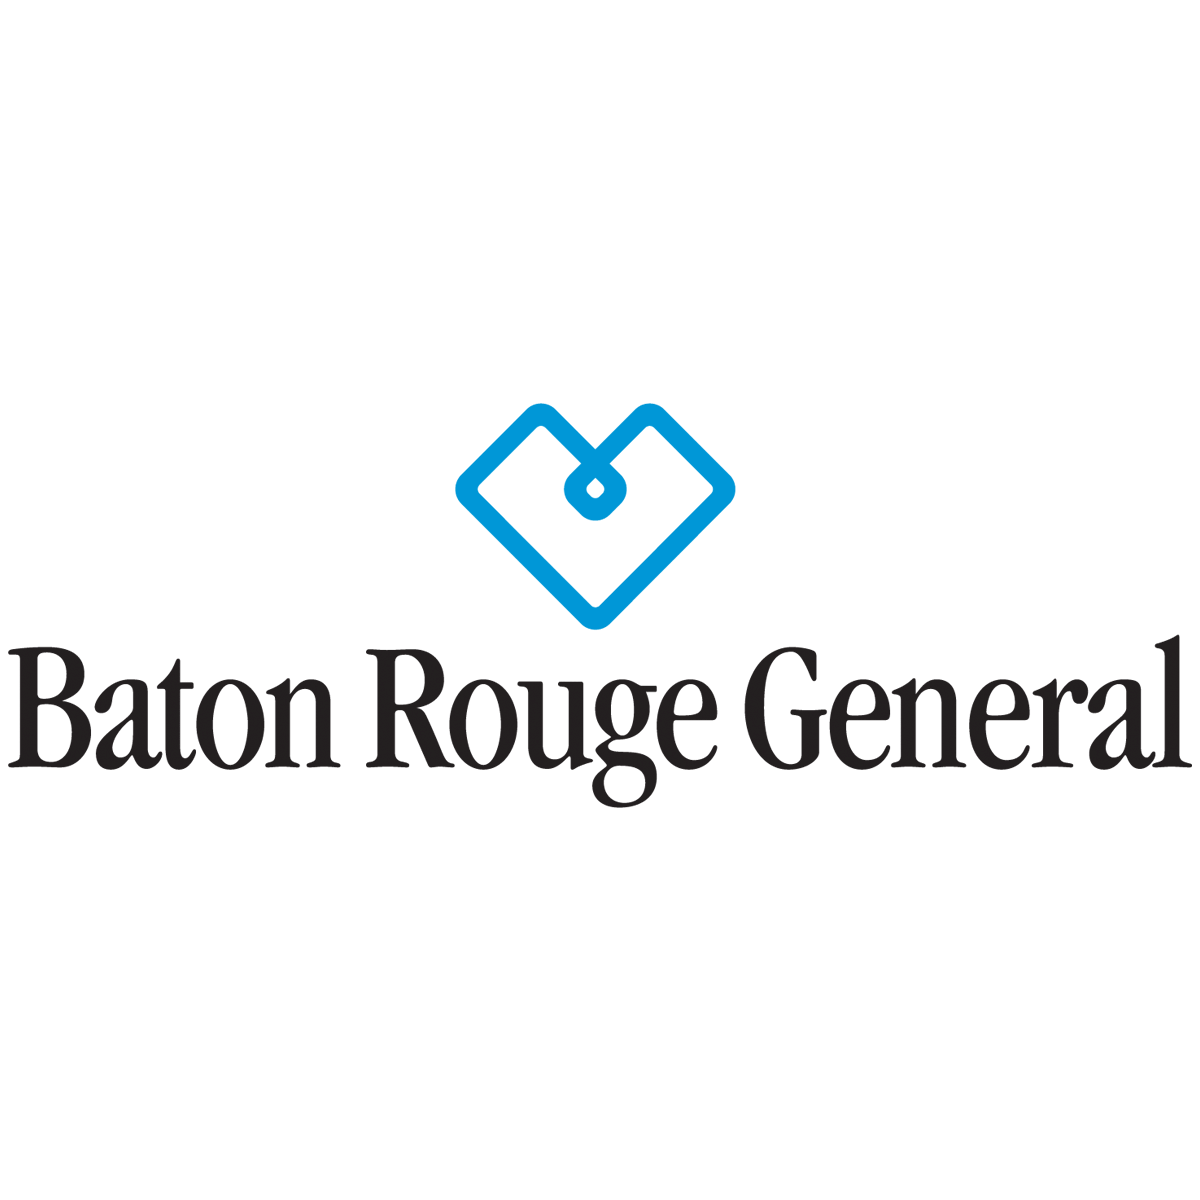 Baton Rouge General Medical Center - Baton Rouge, LA 70806 - (225)387-7000 | ShowMeLocal.com